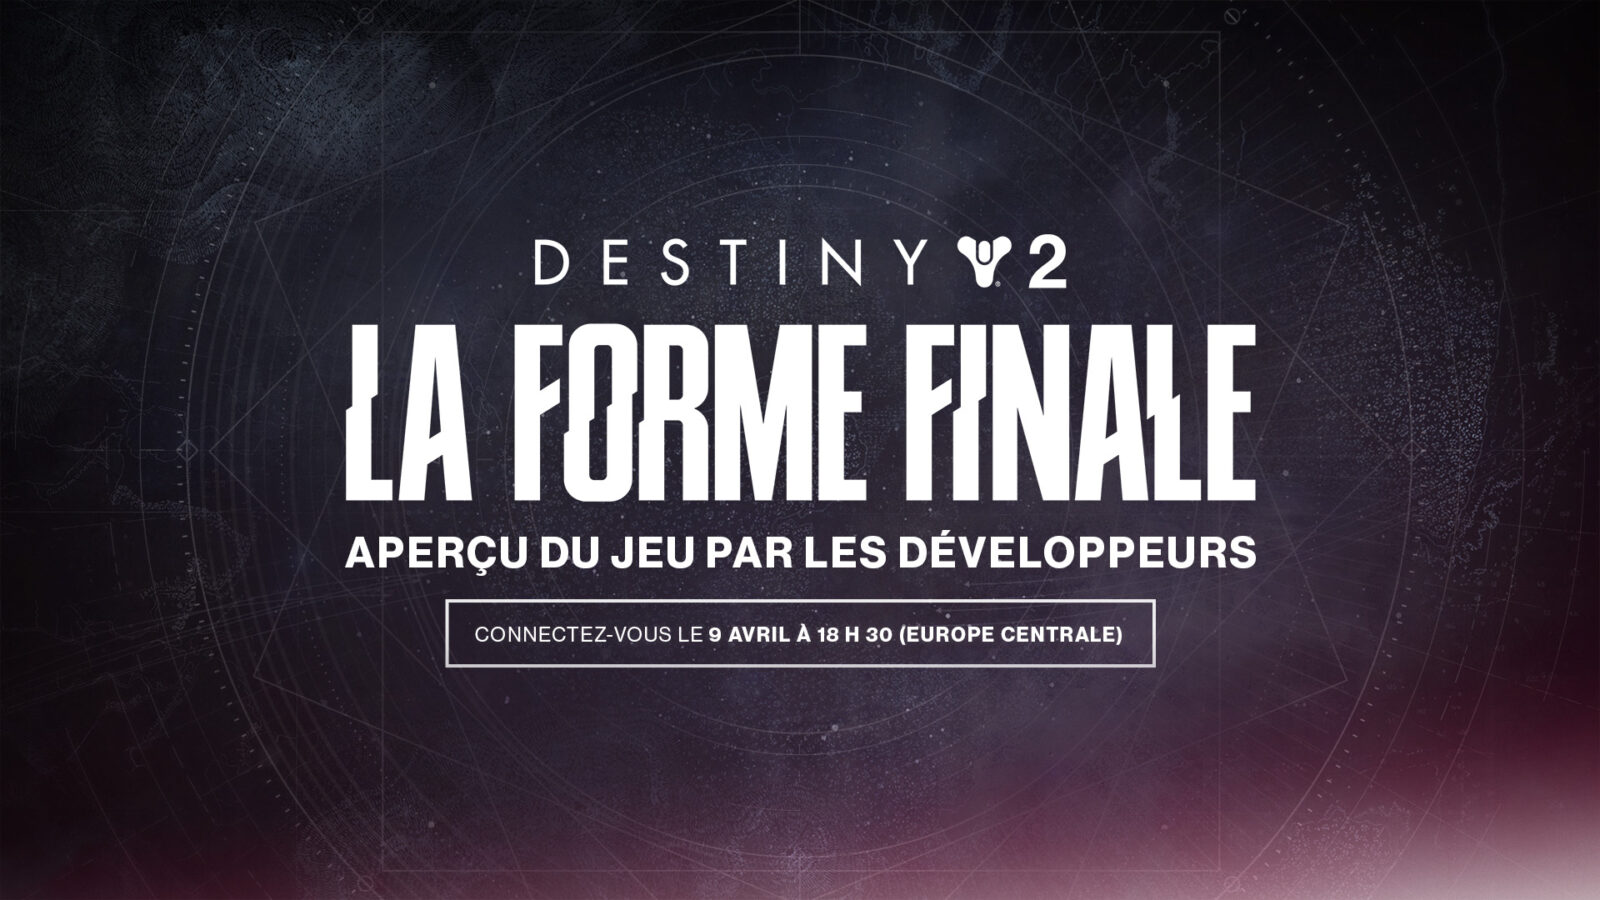 Destiny 2 - La Forme Finale : Bungie annonce un showcase pour présenter du gameplay